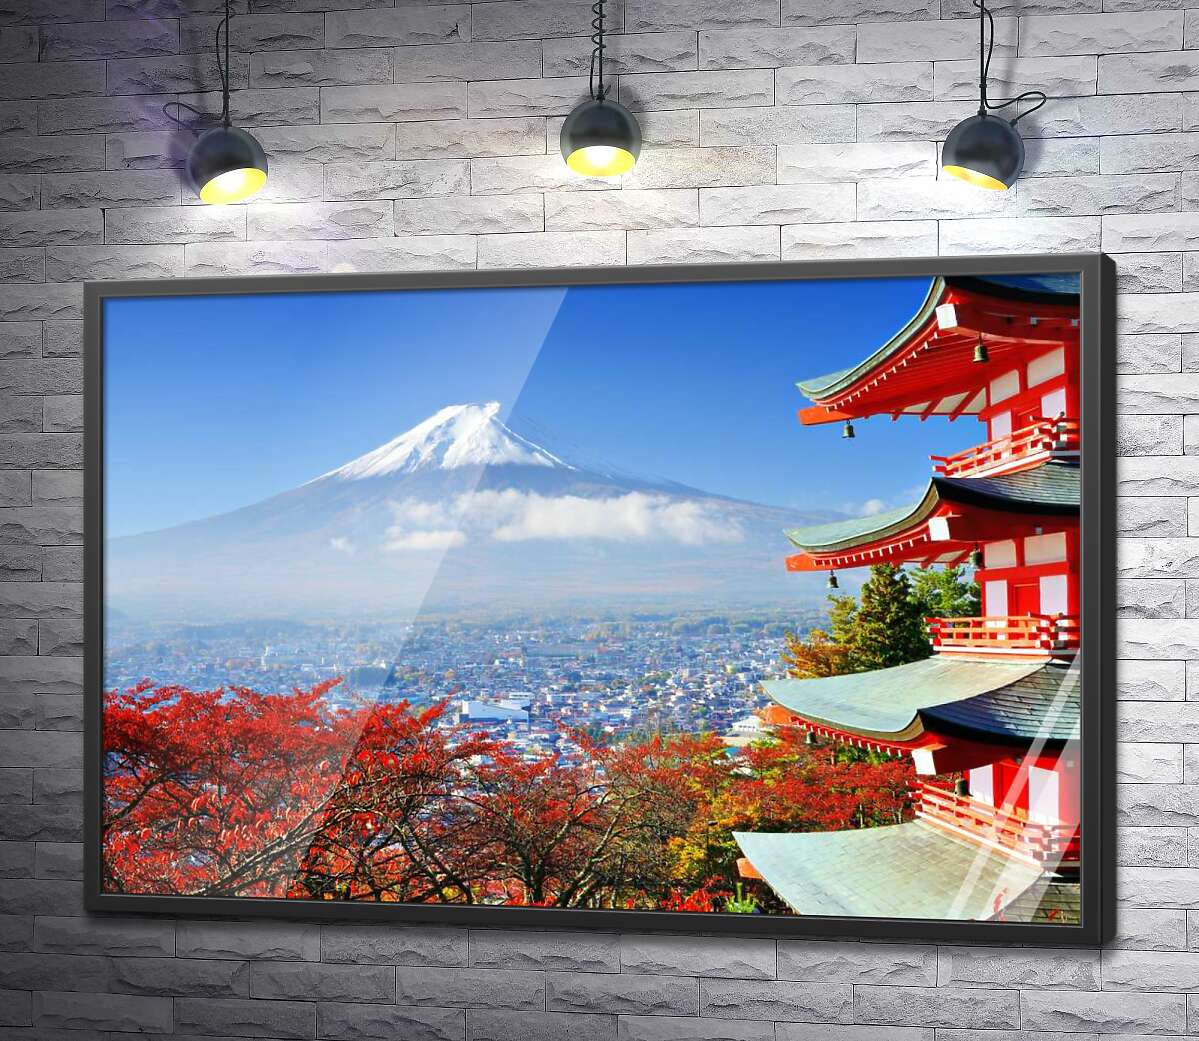 постер Осенний вид на гору Фудзи (Mount Fuji) рядом с живописным зданием пагоды